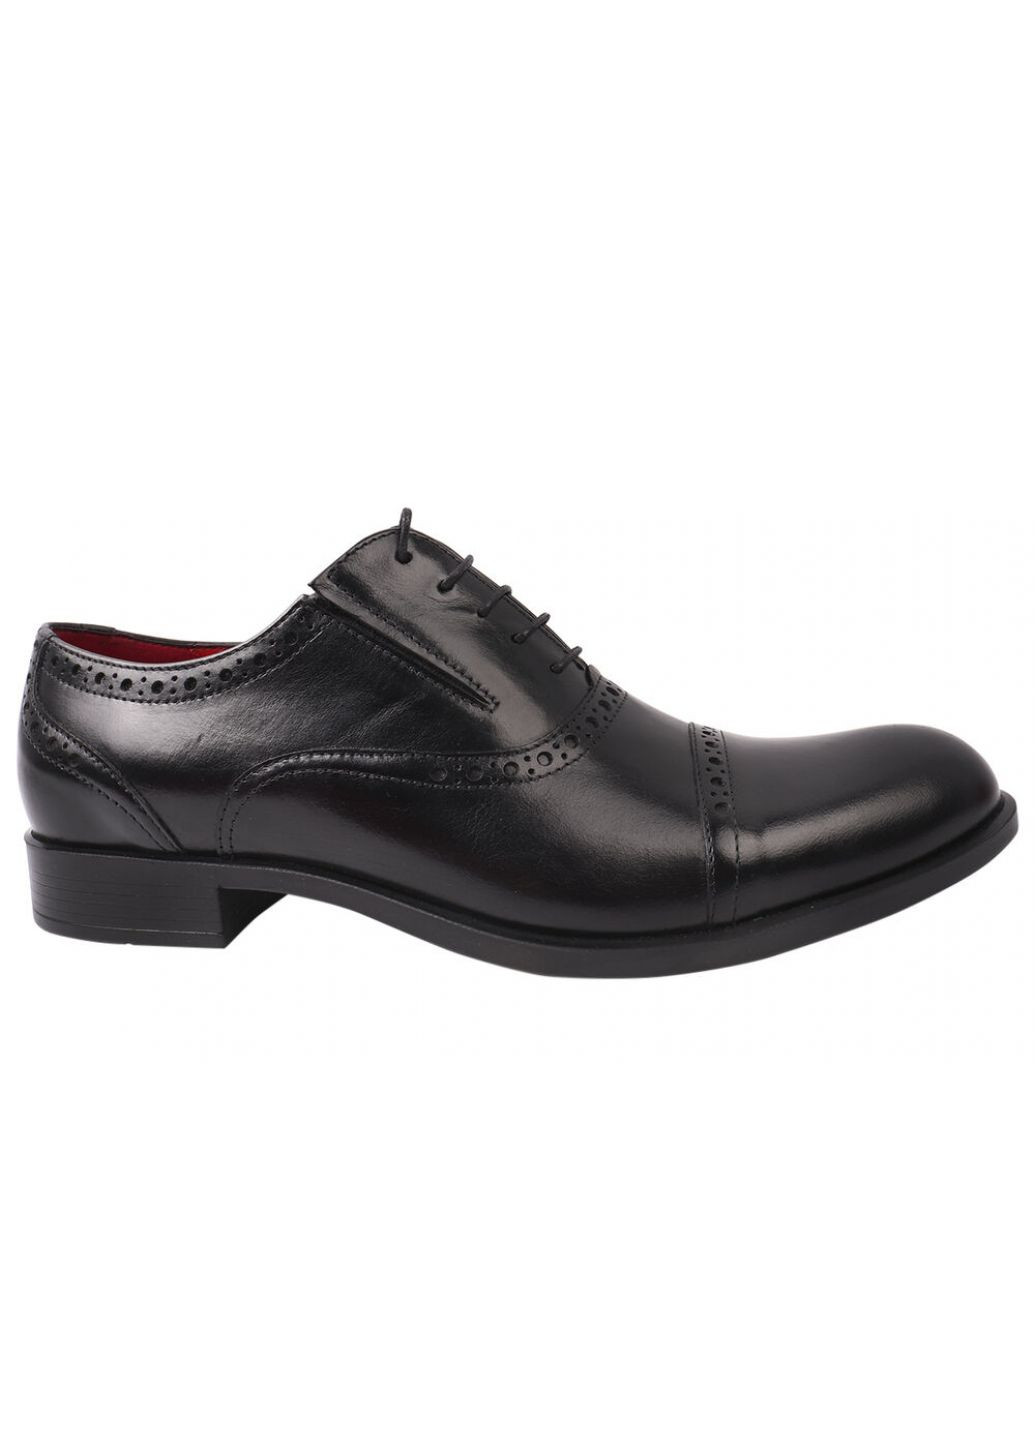 Черные туфли мужские из натуральной кожи, на шнуровке, на низком ходу, черные, Fabio Conti